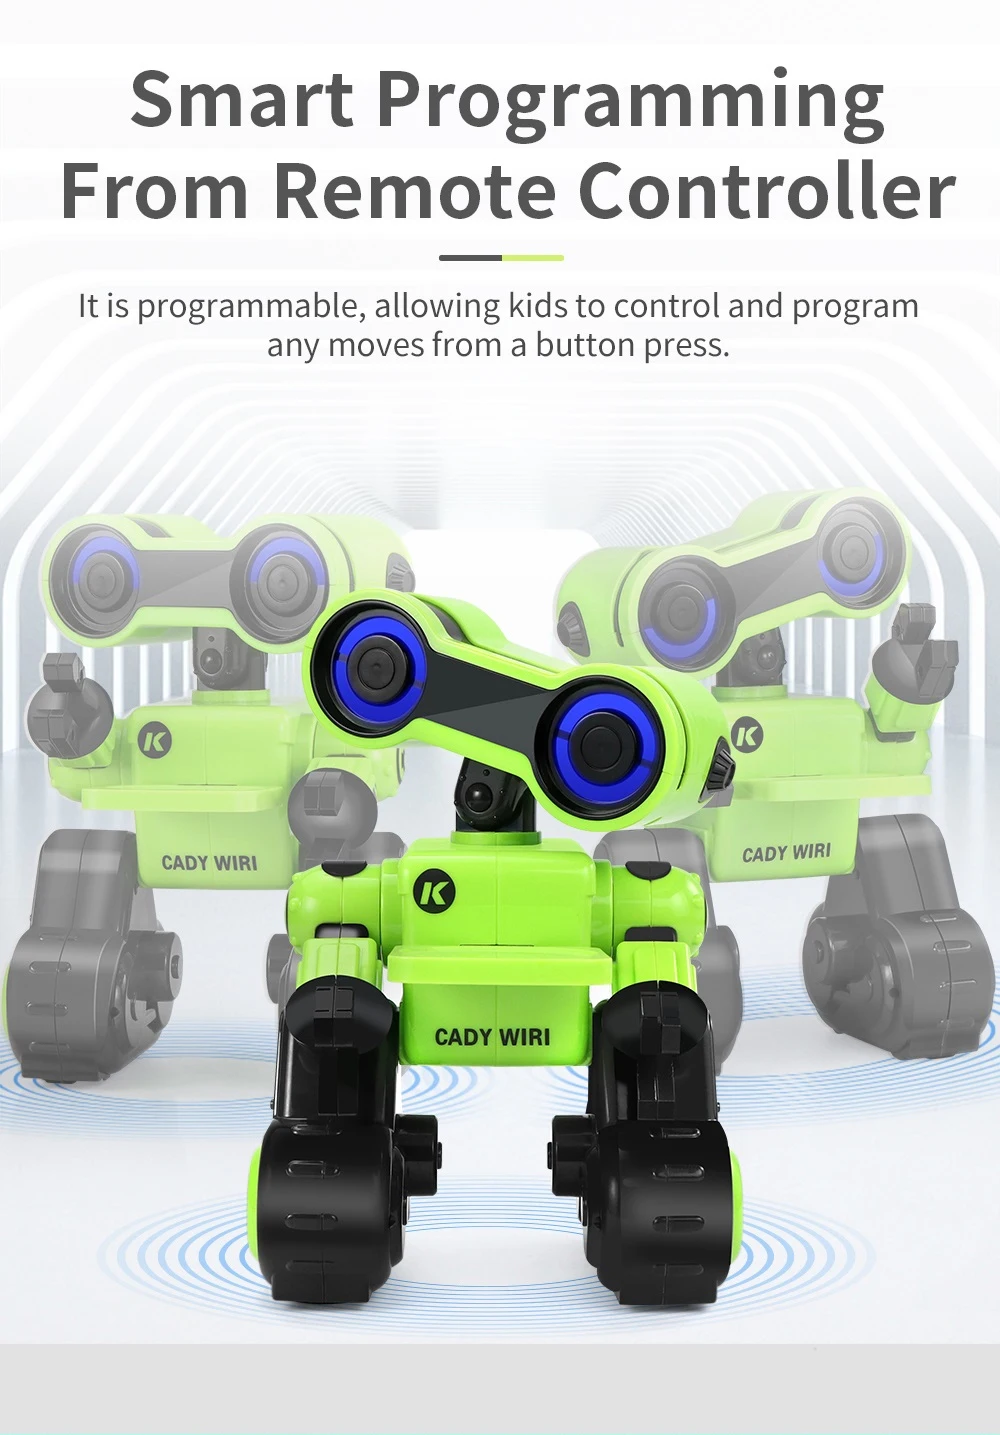 JJRC R13 RC робот YW CADY WIRI power умный робот с дистанционным управлением интеллектуальная научно-исследовательская игрушка с RGB Подсветкой